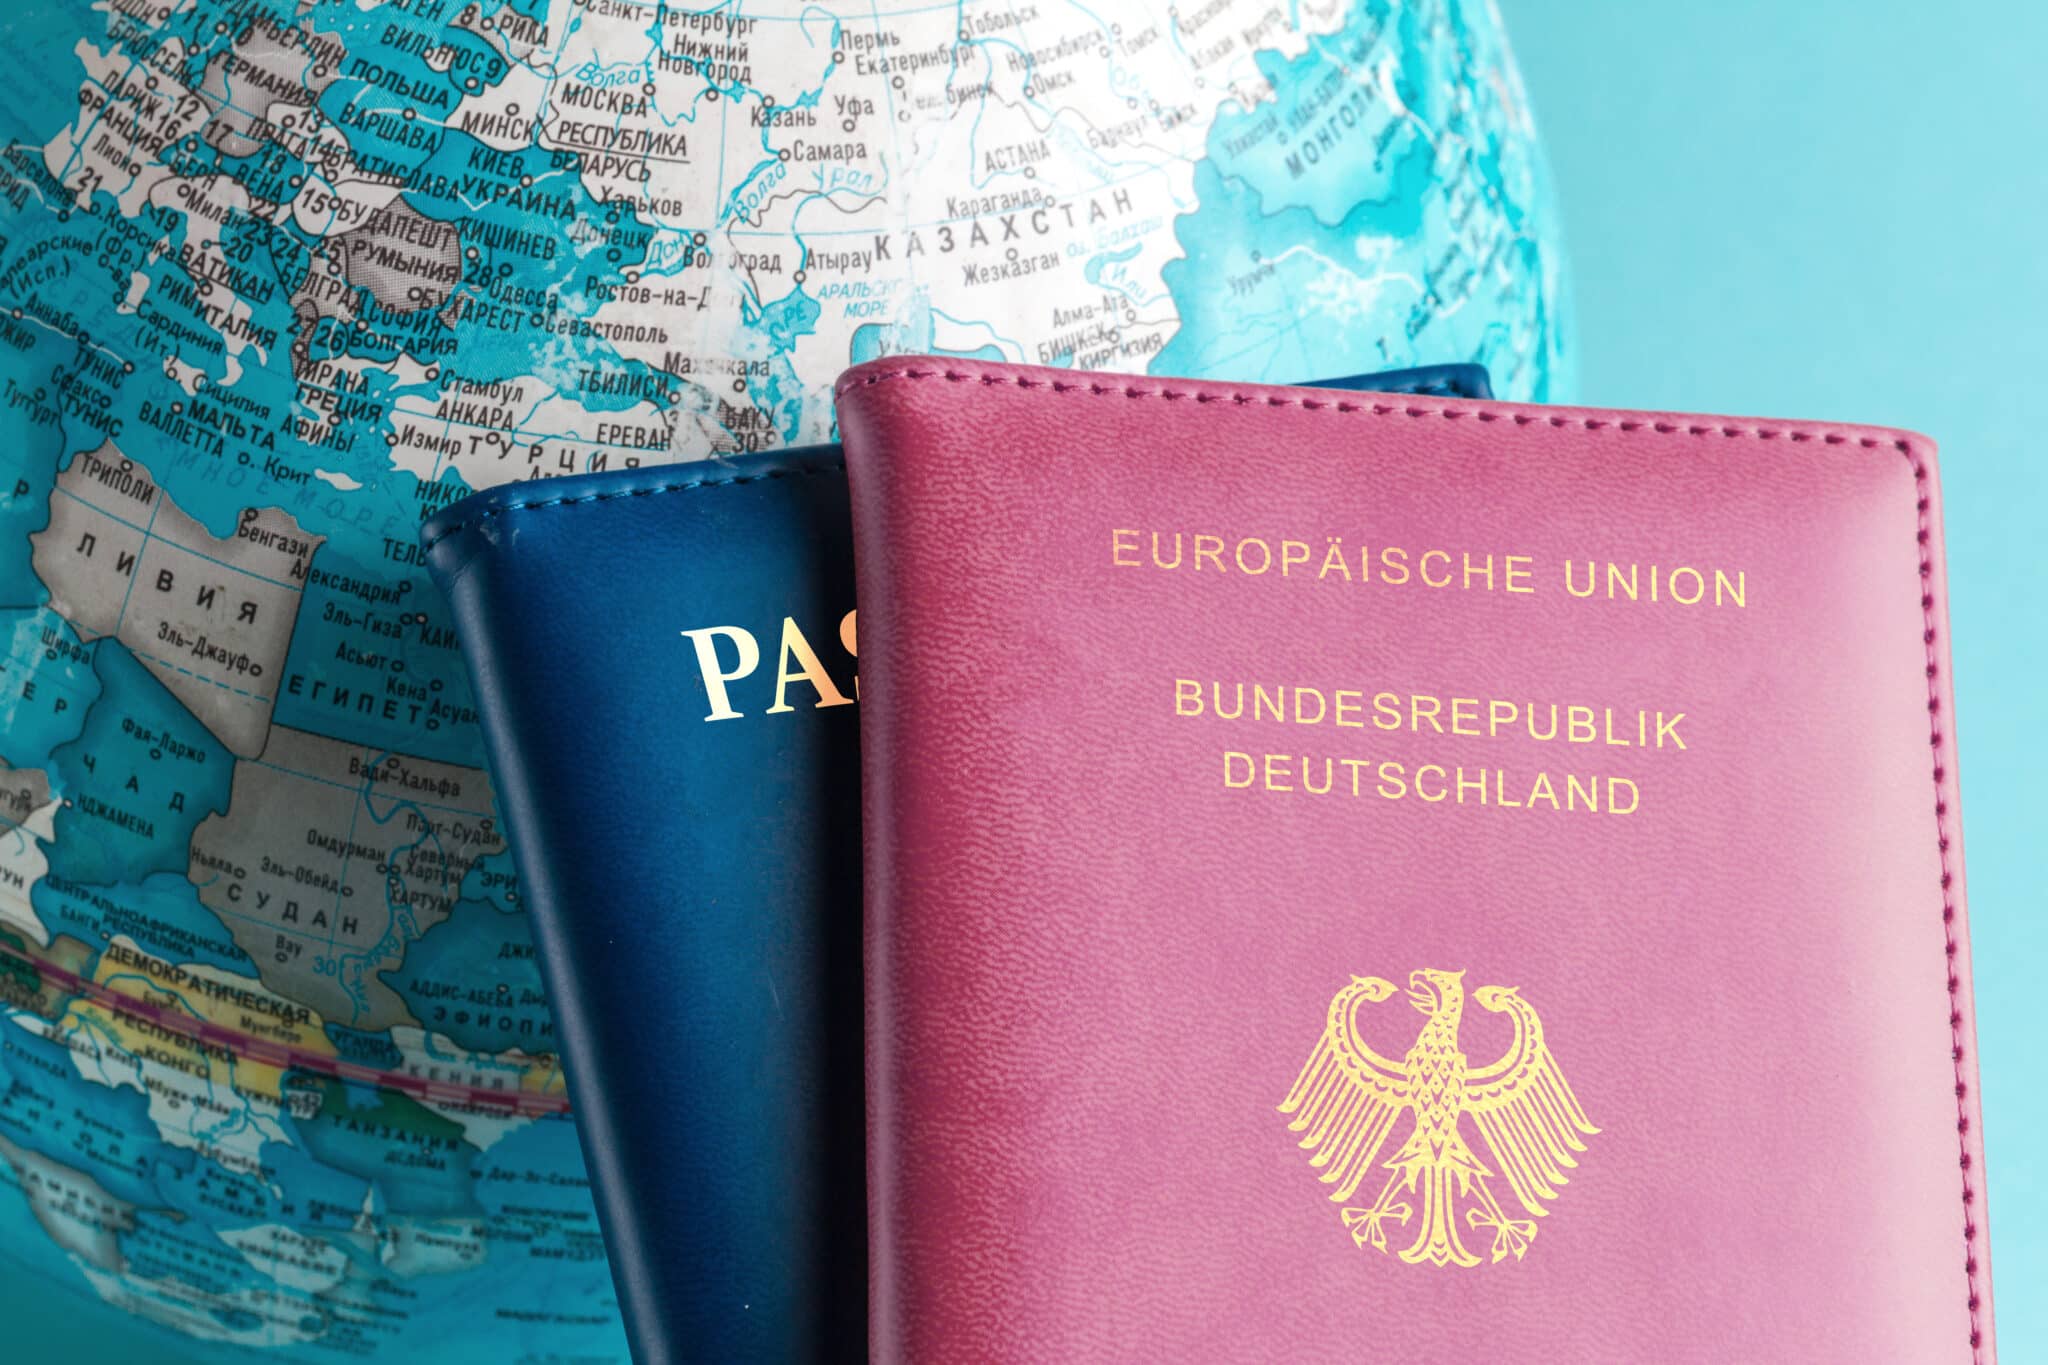 Zwei Reisepässe, einer mit der Aufschrift 'Europäische Union Bundesrepublik Deutschland' und der andere nur mit 'Passport', liegen auf einem Globus mit Fokus auf Europa, symbolisch für die doppelte Staatsbürgerschaft.